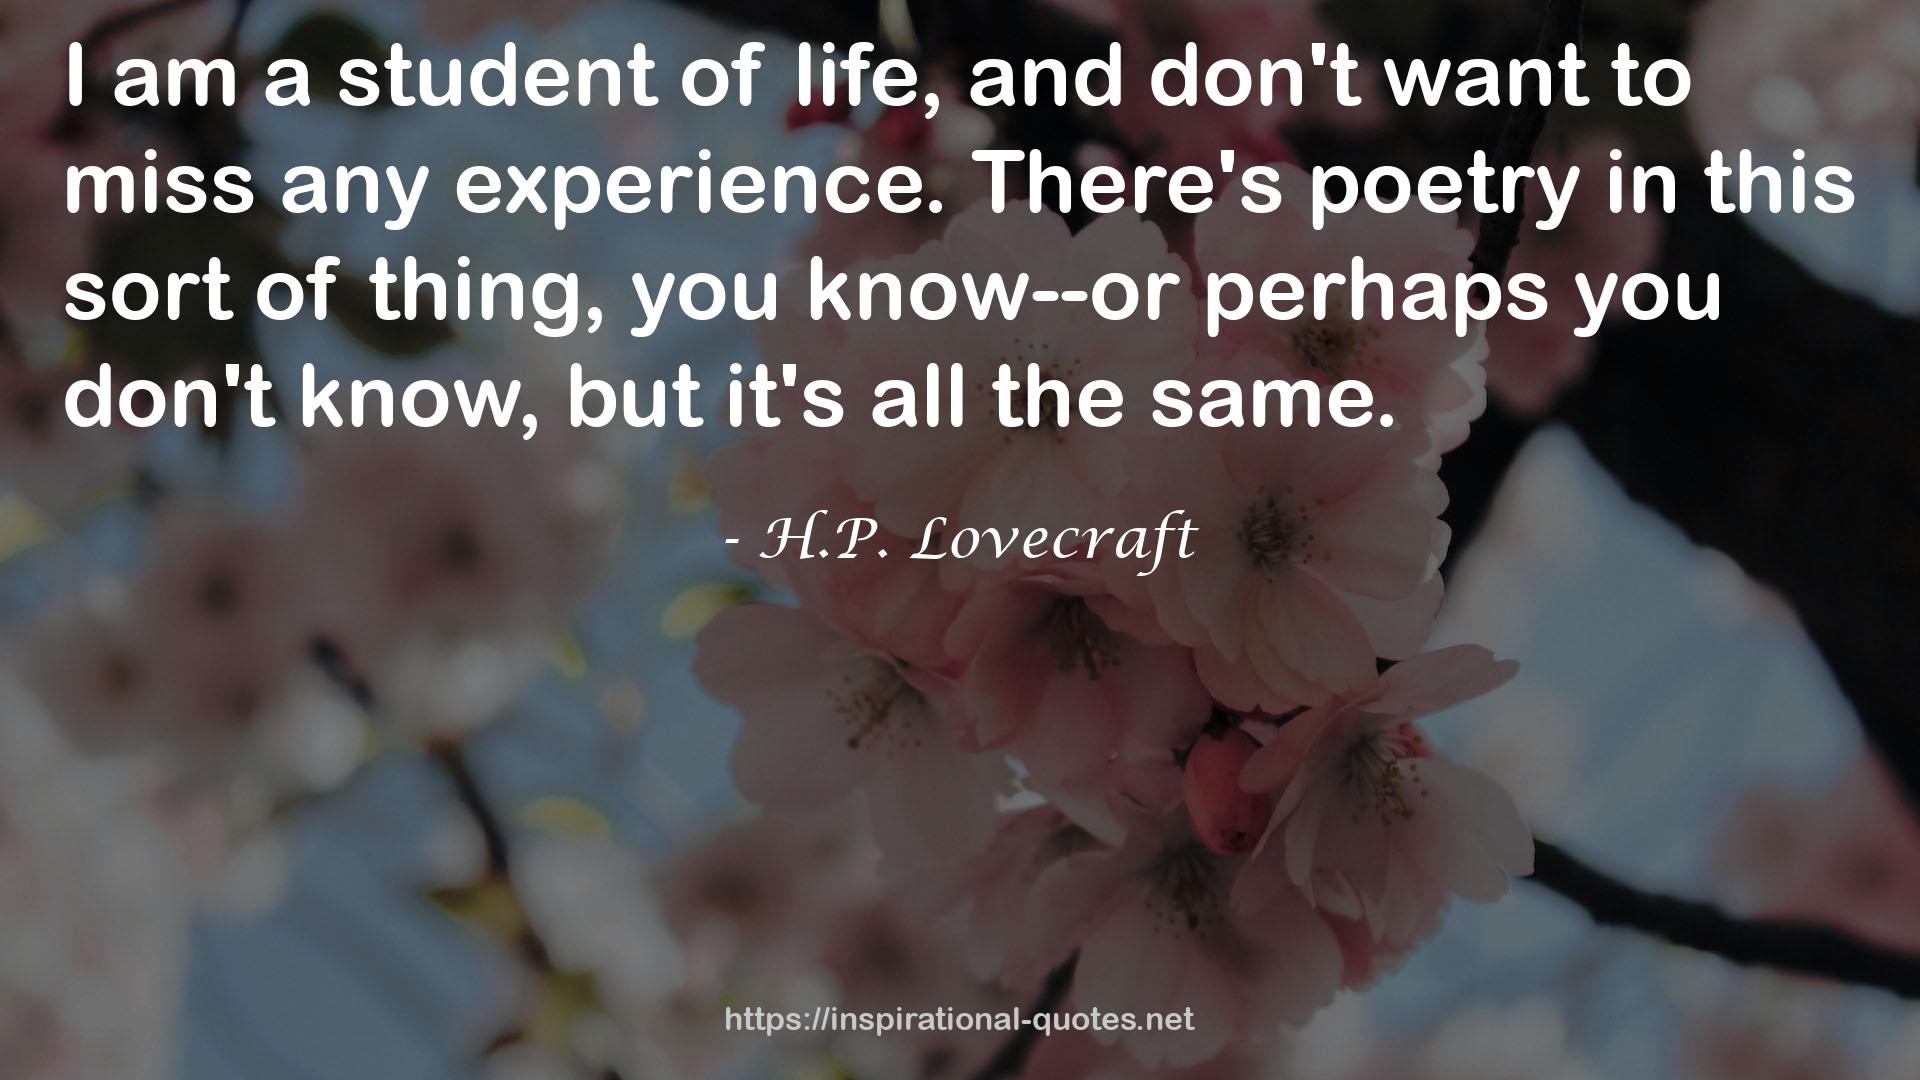 H.P. Lovecraft QUOTES